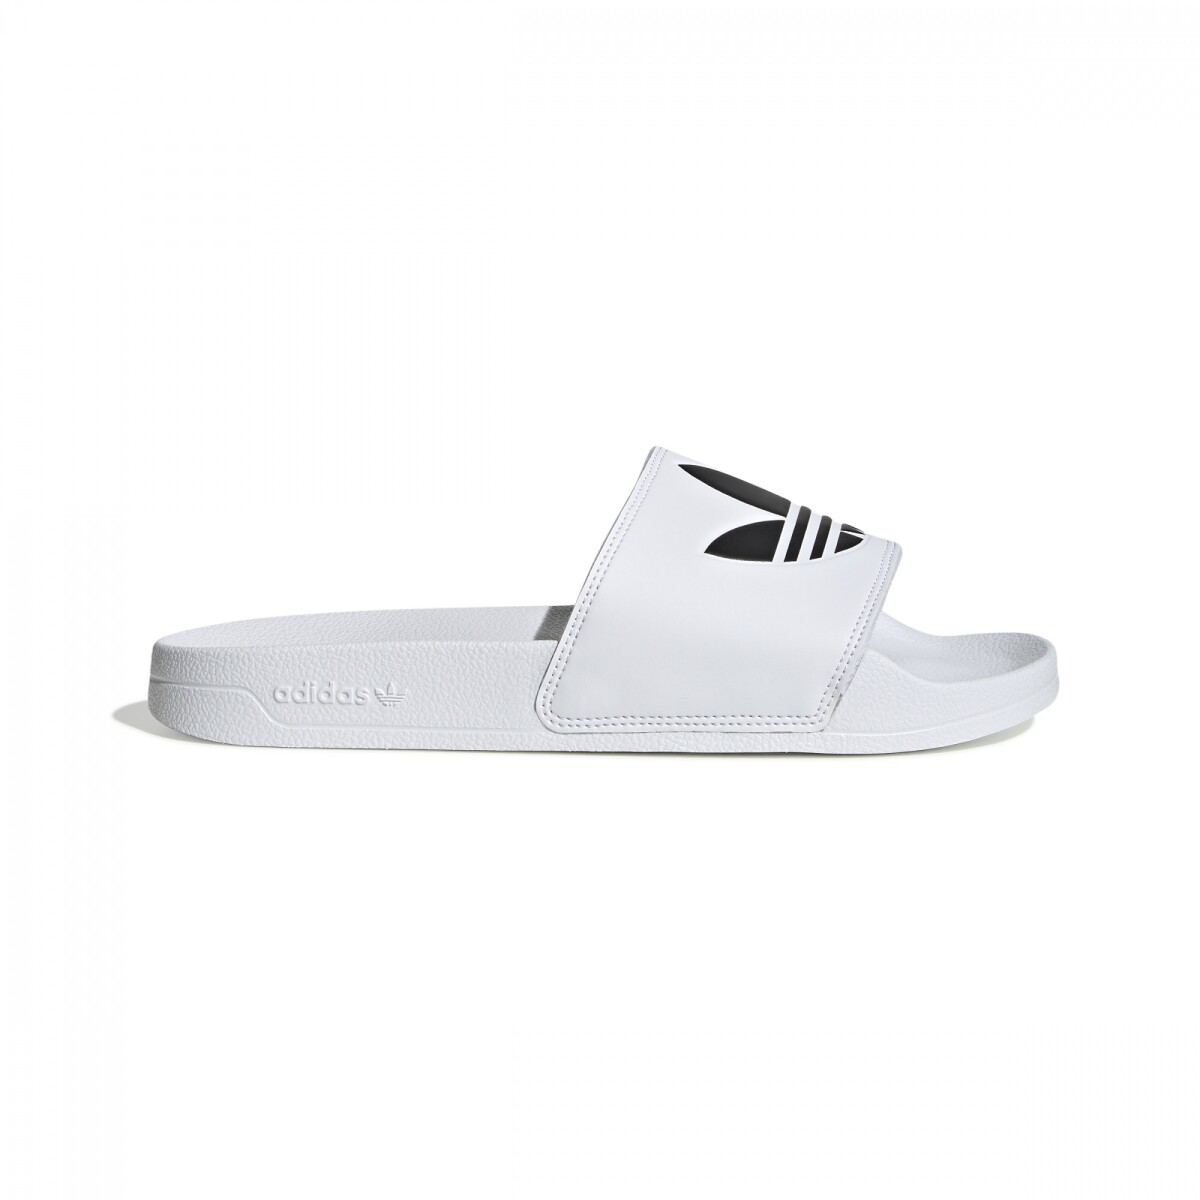 Sandalias Adidas unisex - ADFU8297 - BLACK/WHITE 